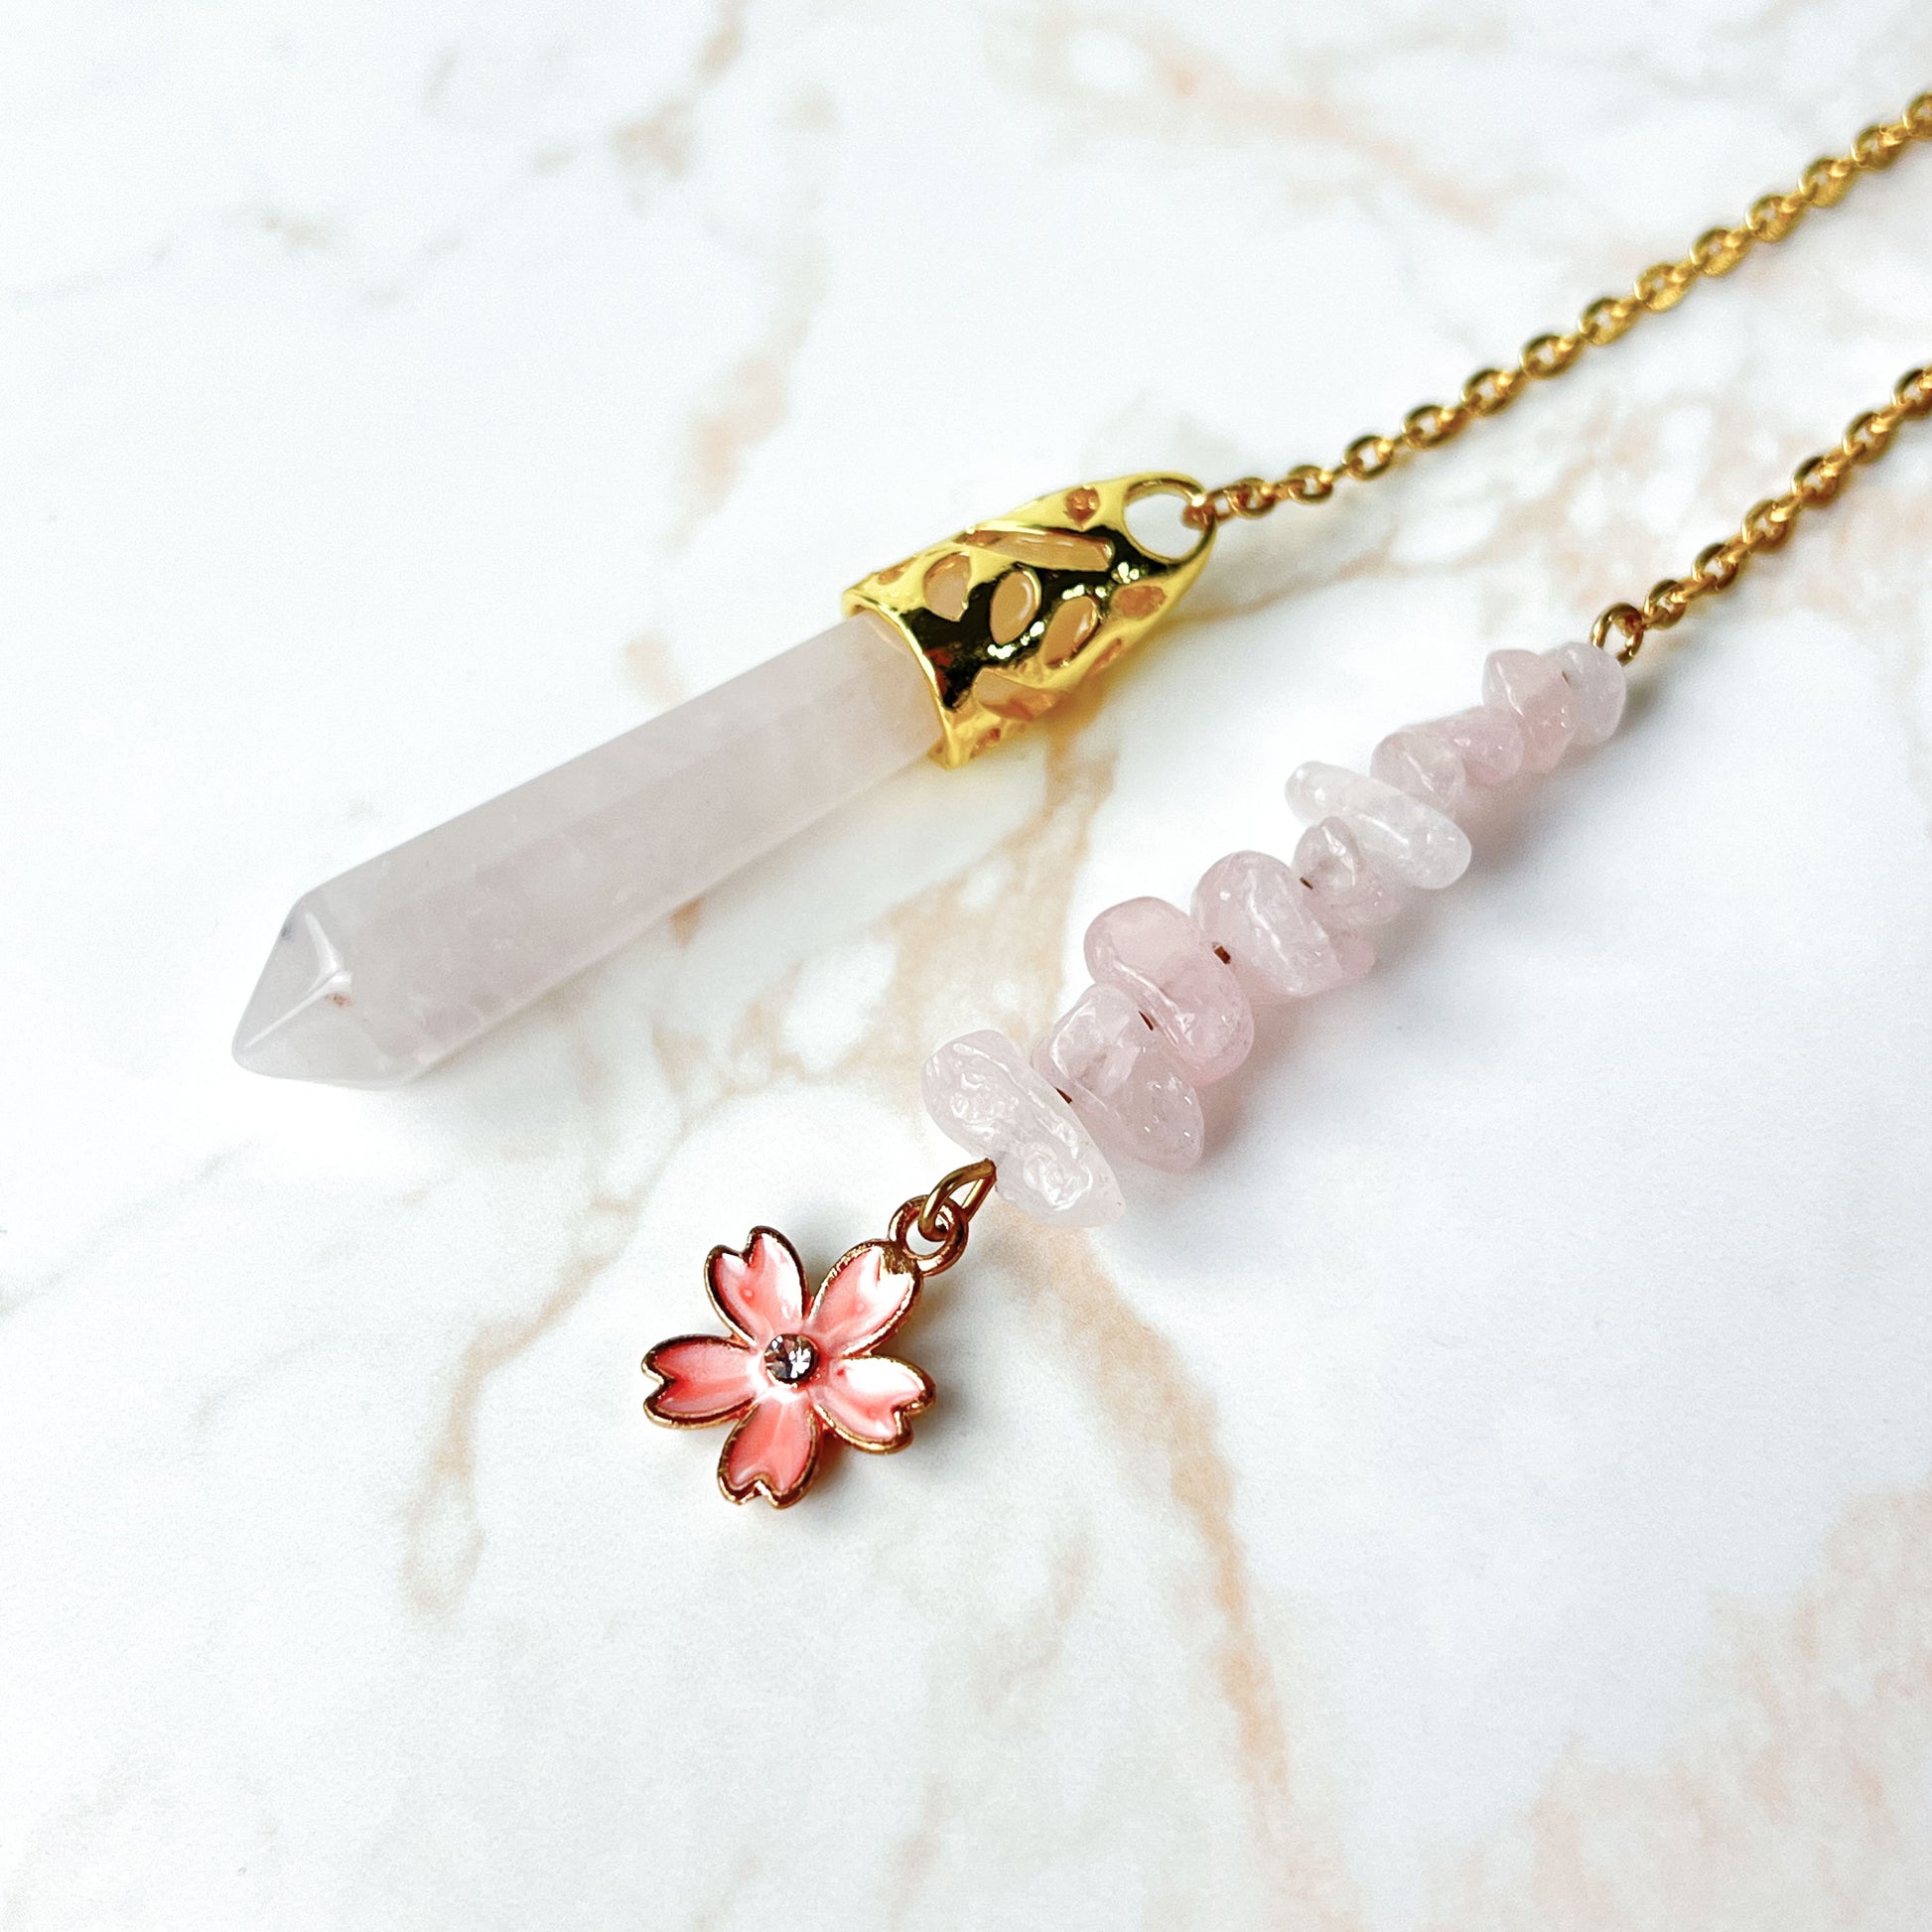 Golden Rose quartz sakura flower pendulum Baguette Magick